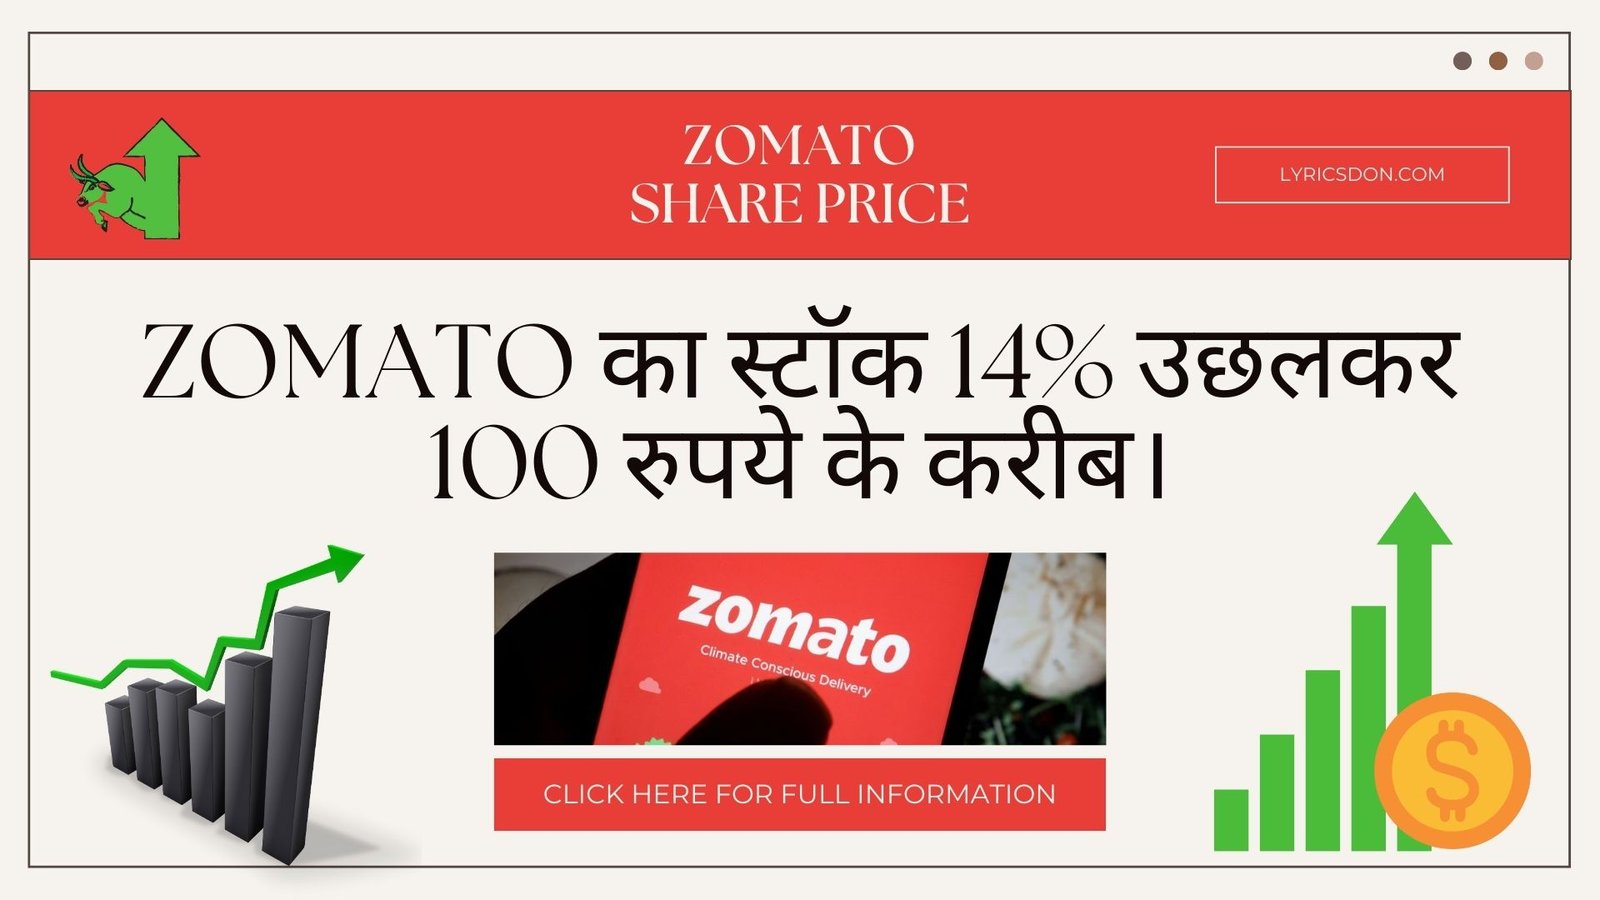 Zomato Share Price : स्टॉक 14% उछलकर 100 रुपये के करीब। शेयर मूल्य लक्ष्य आगे बढ़ने का सुझाव देते हैं